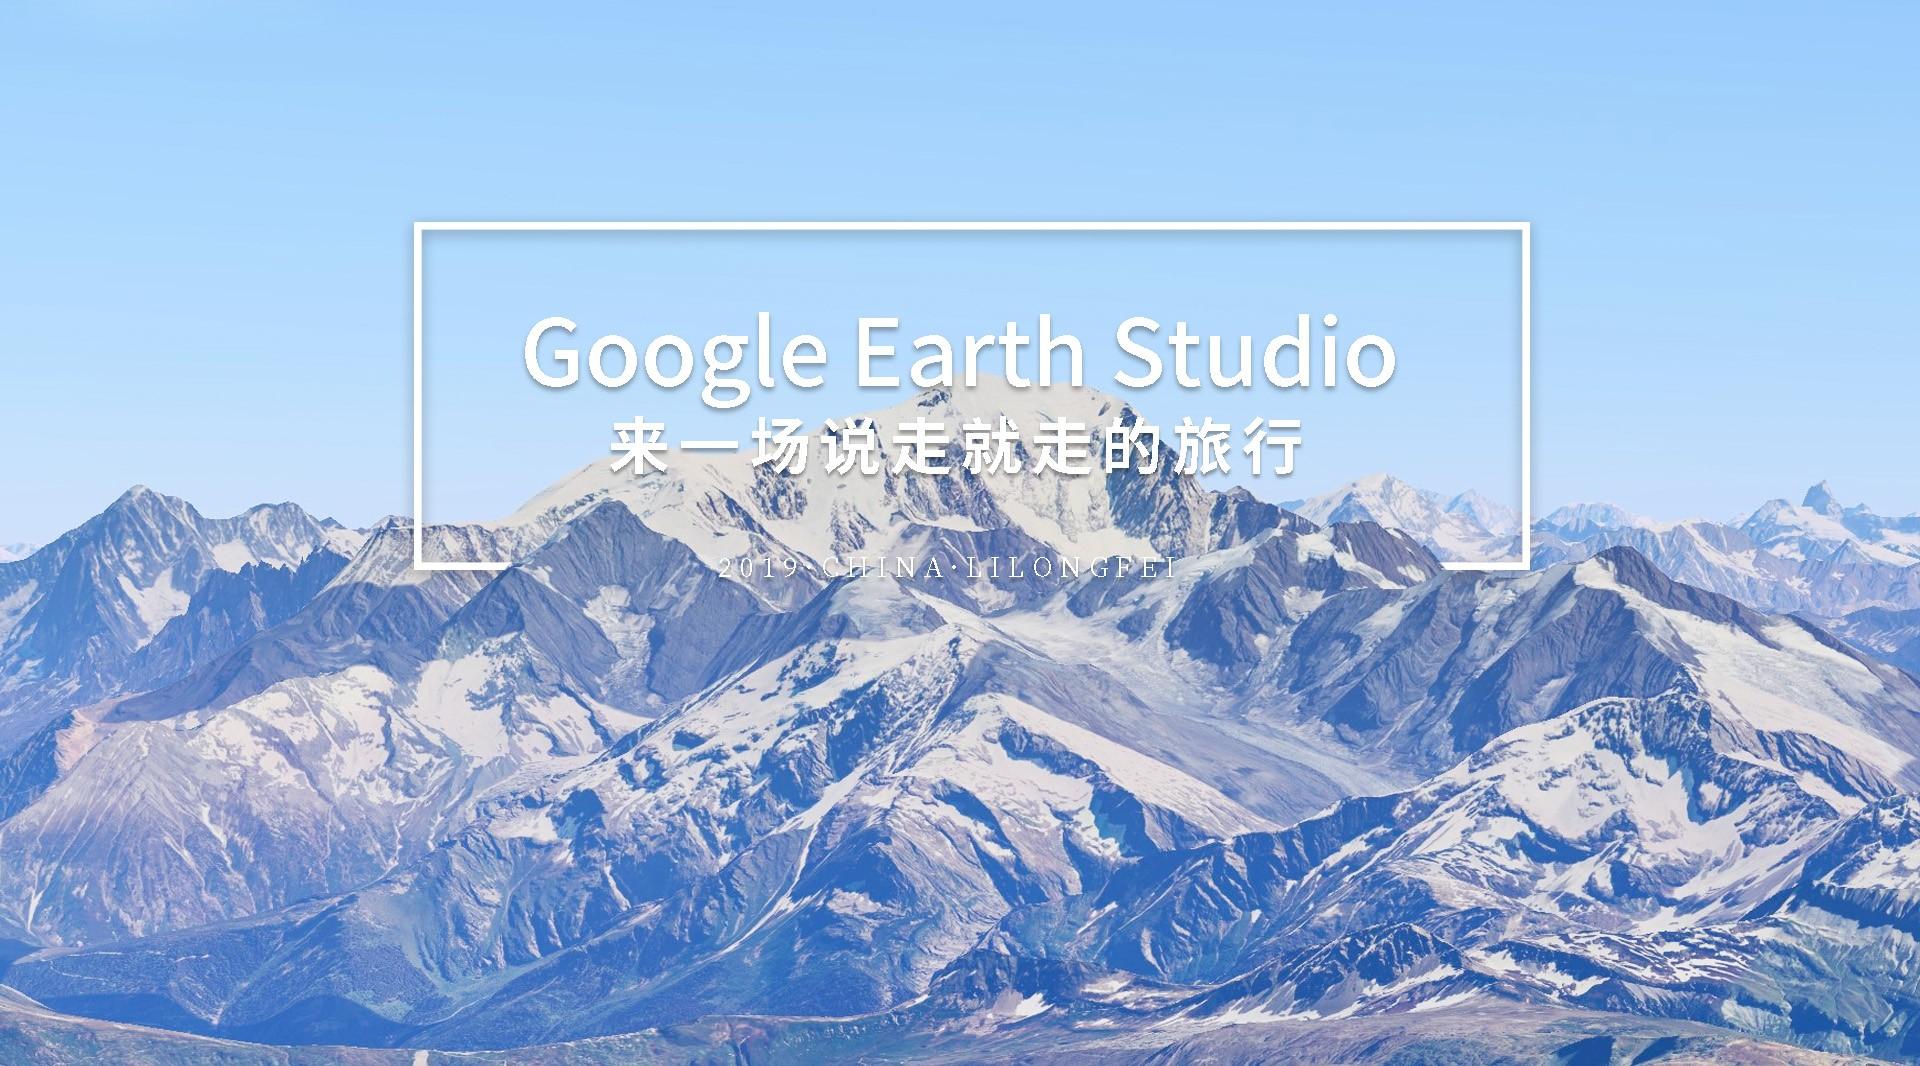 【环游世界】在Google Earth Studio上来一次说走就走的旅行